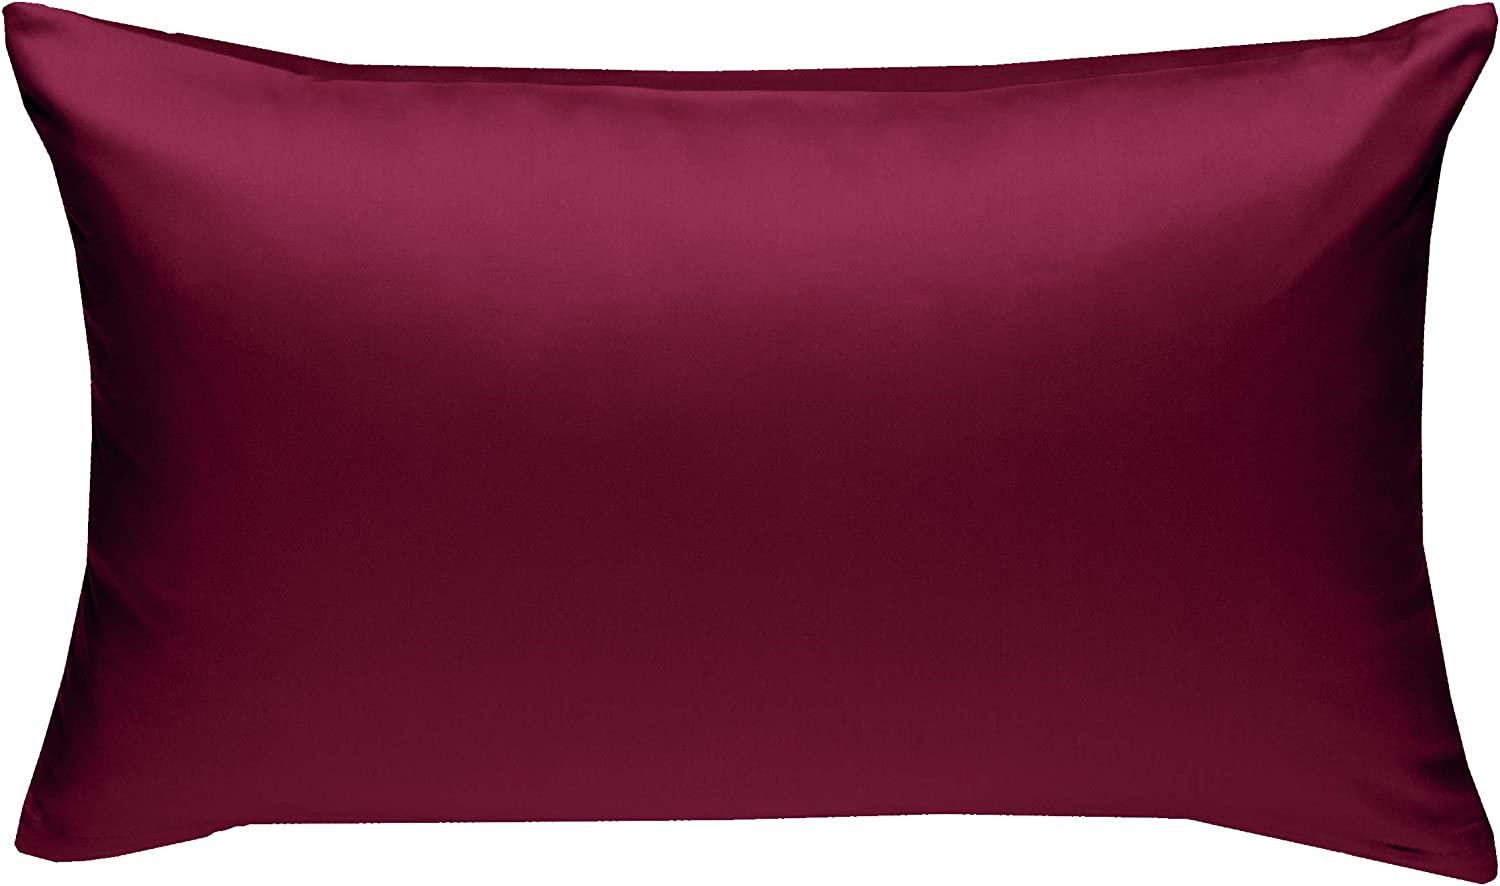 Bettwaesche-mit-Stil Mako-Satin / Baumwollsatin Bettwäsche uni / einfarbig pink Kissenbezug 50x70 cm Bild 1